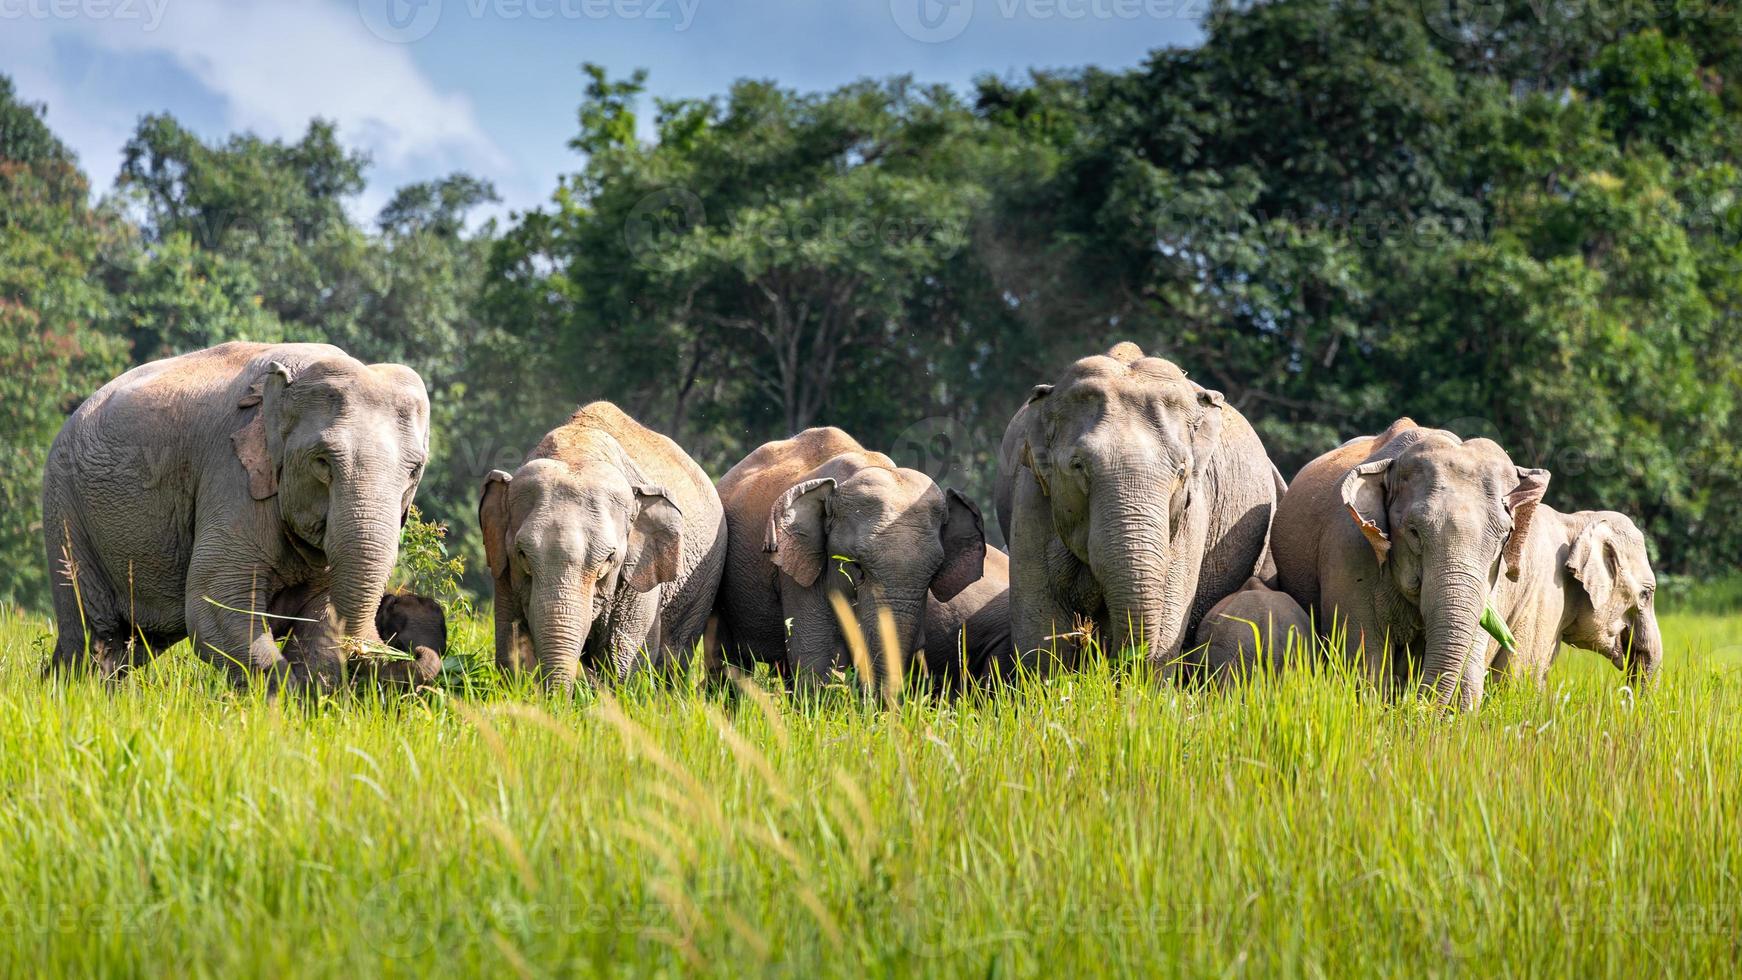 wilde elefantenfamilie auf der grünen wiese des tropischen regenwaldes. foto